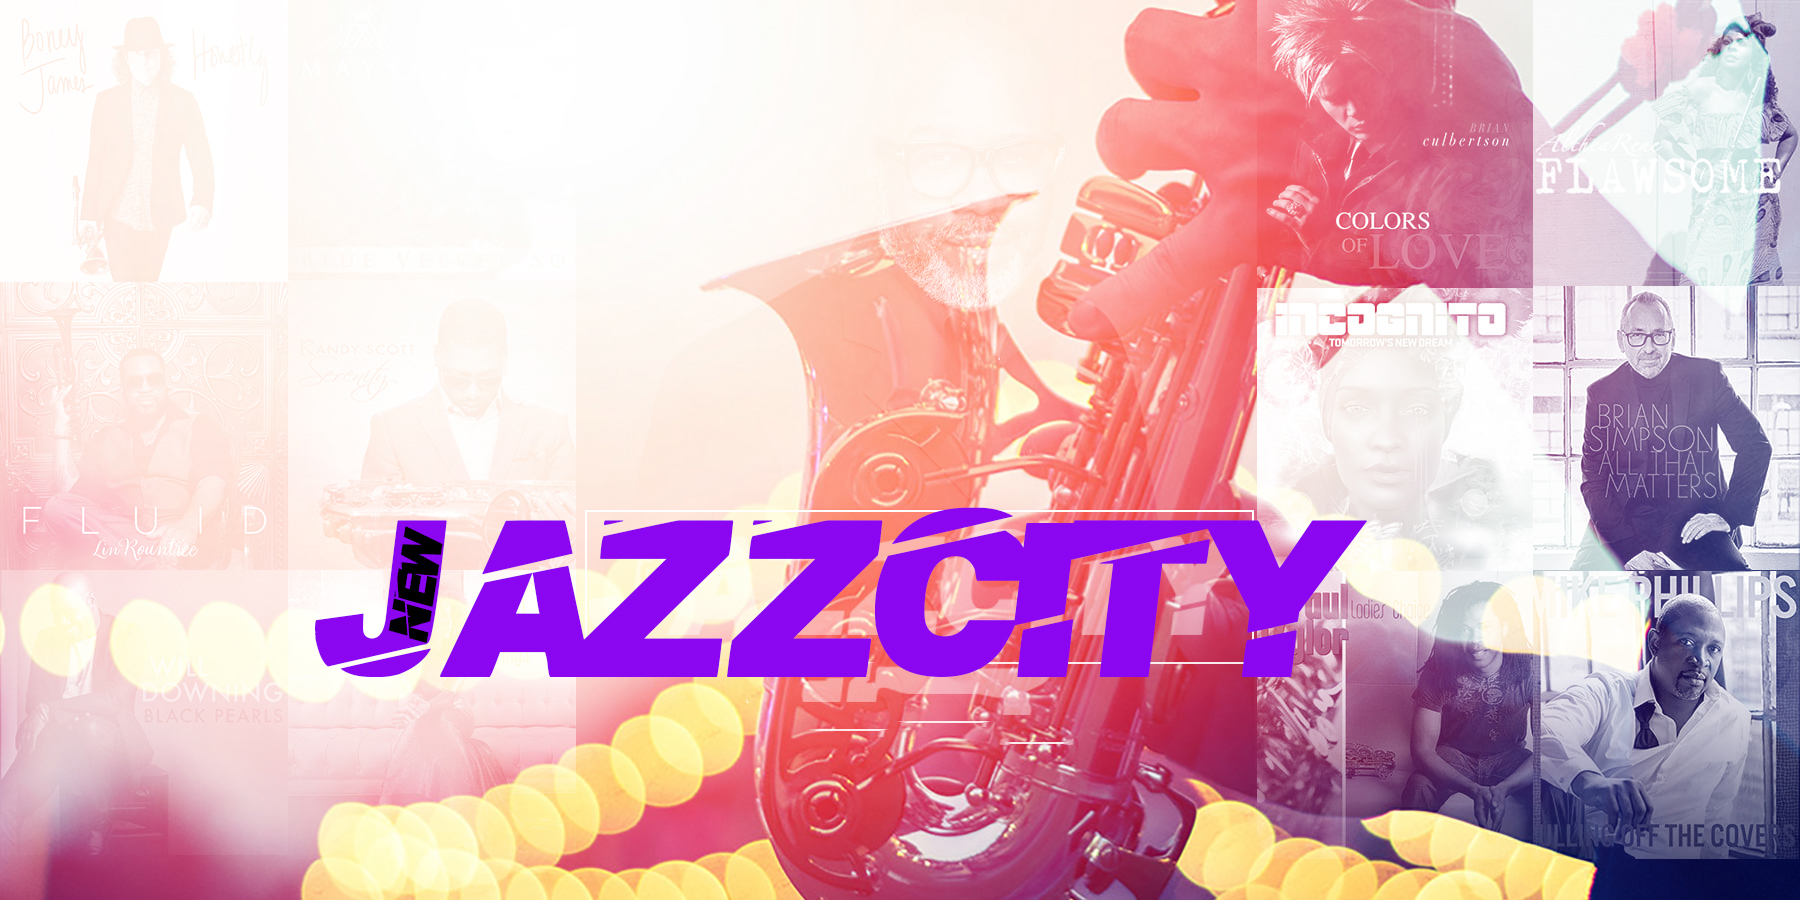 New Jazz City Radio #4